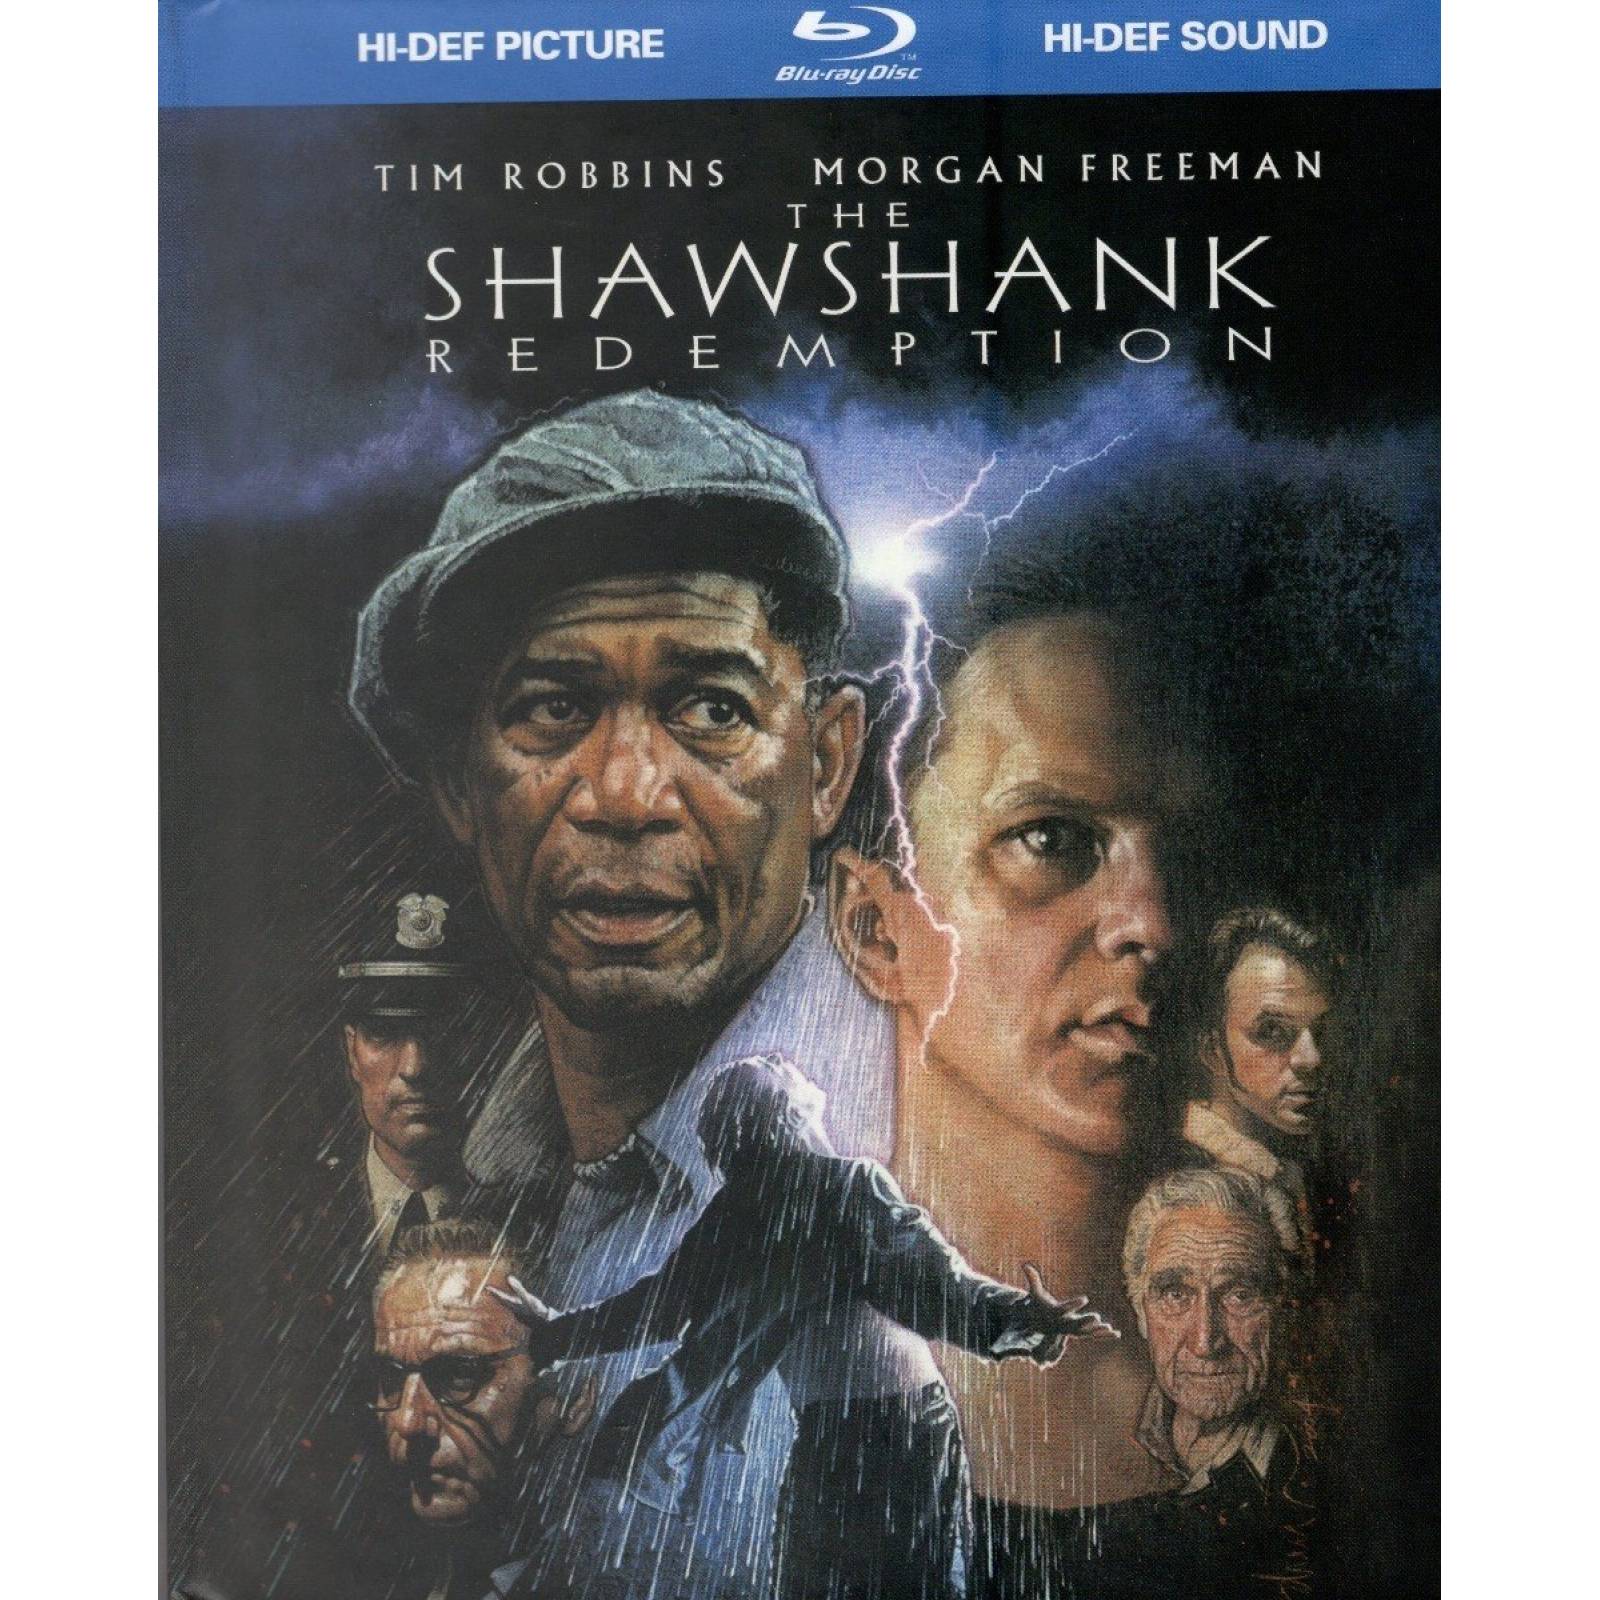 Desaparecio Una Noche Morgan Freeman Pelicula Blu-ray